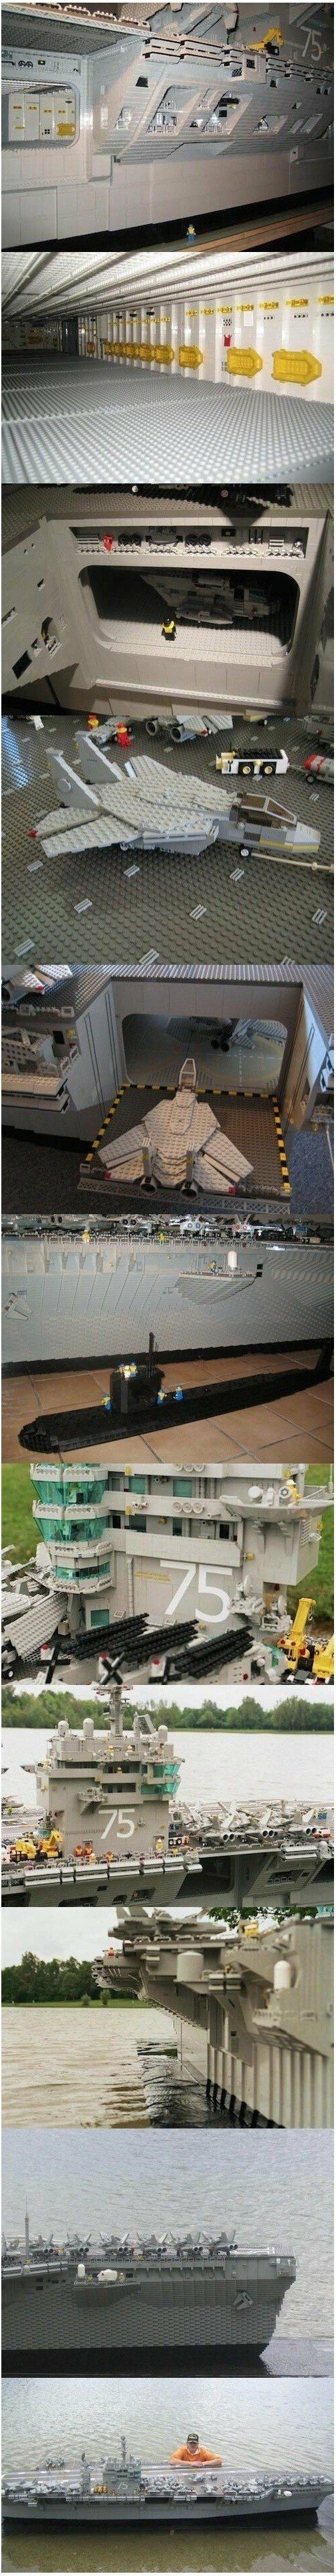 레고로 만든 항공모함 .jpg.jpg